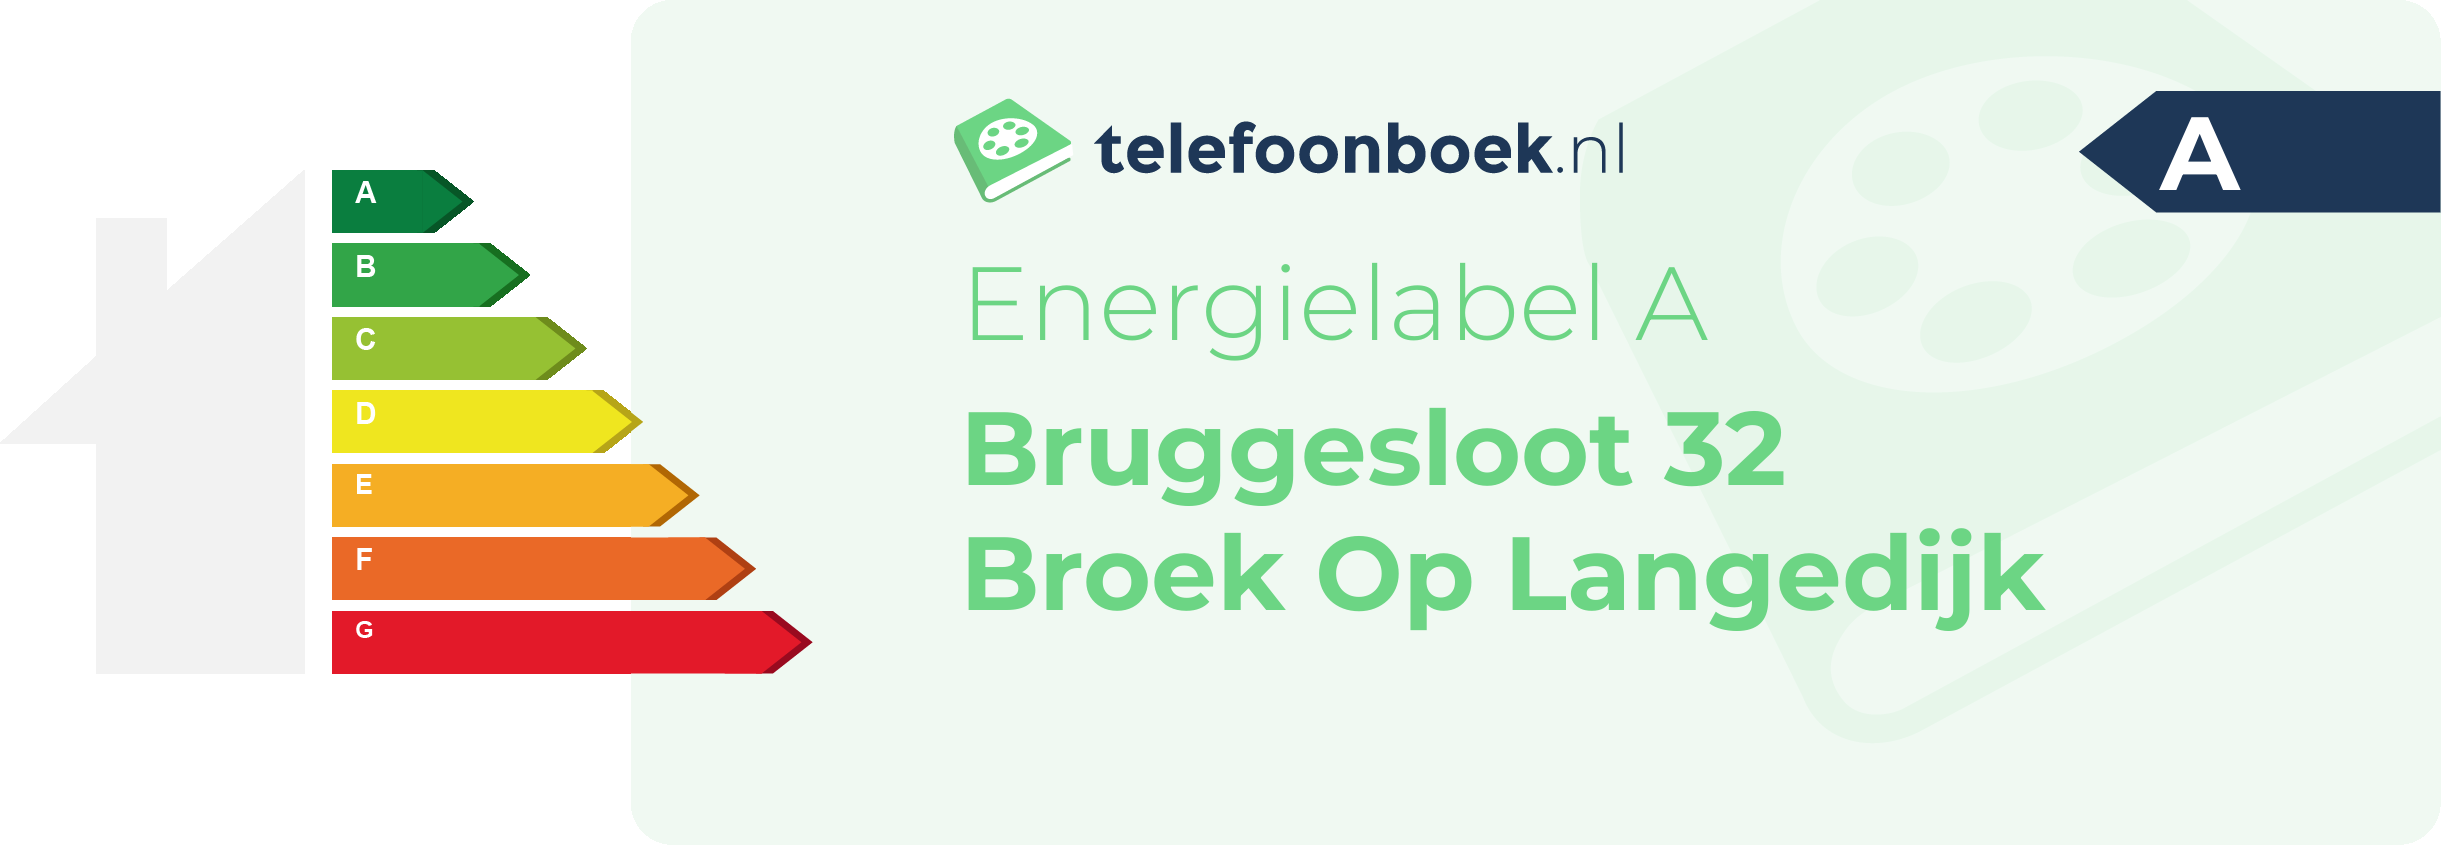 Energielabel Bruggesloot 32 Broek Op Langedijk